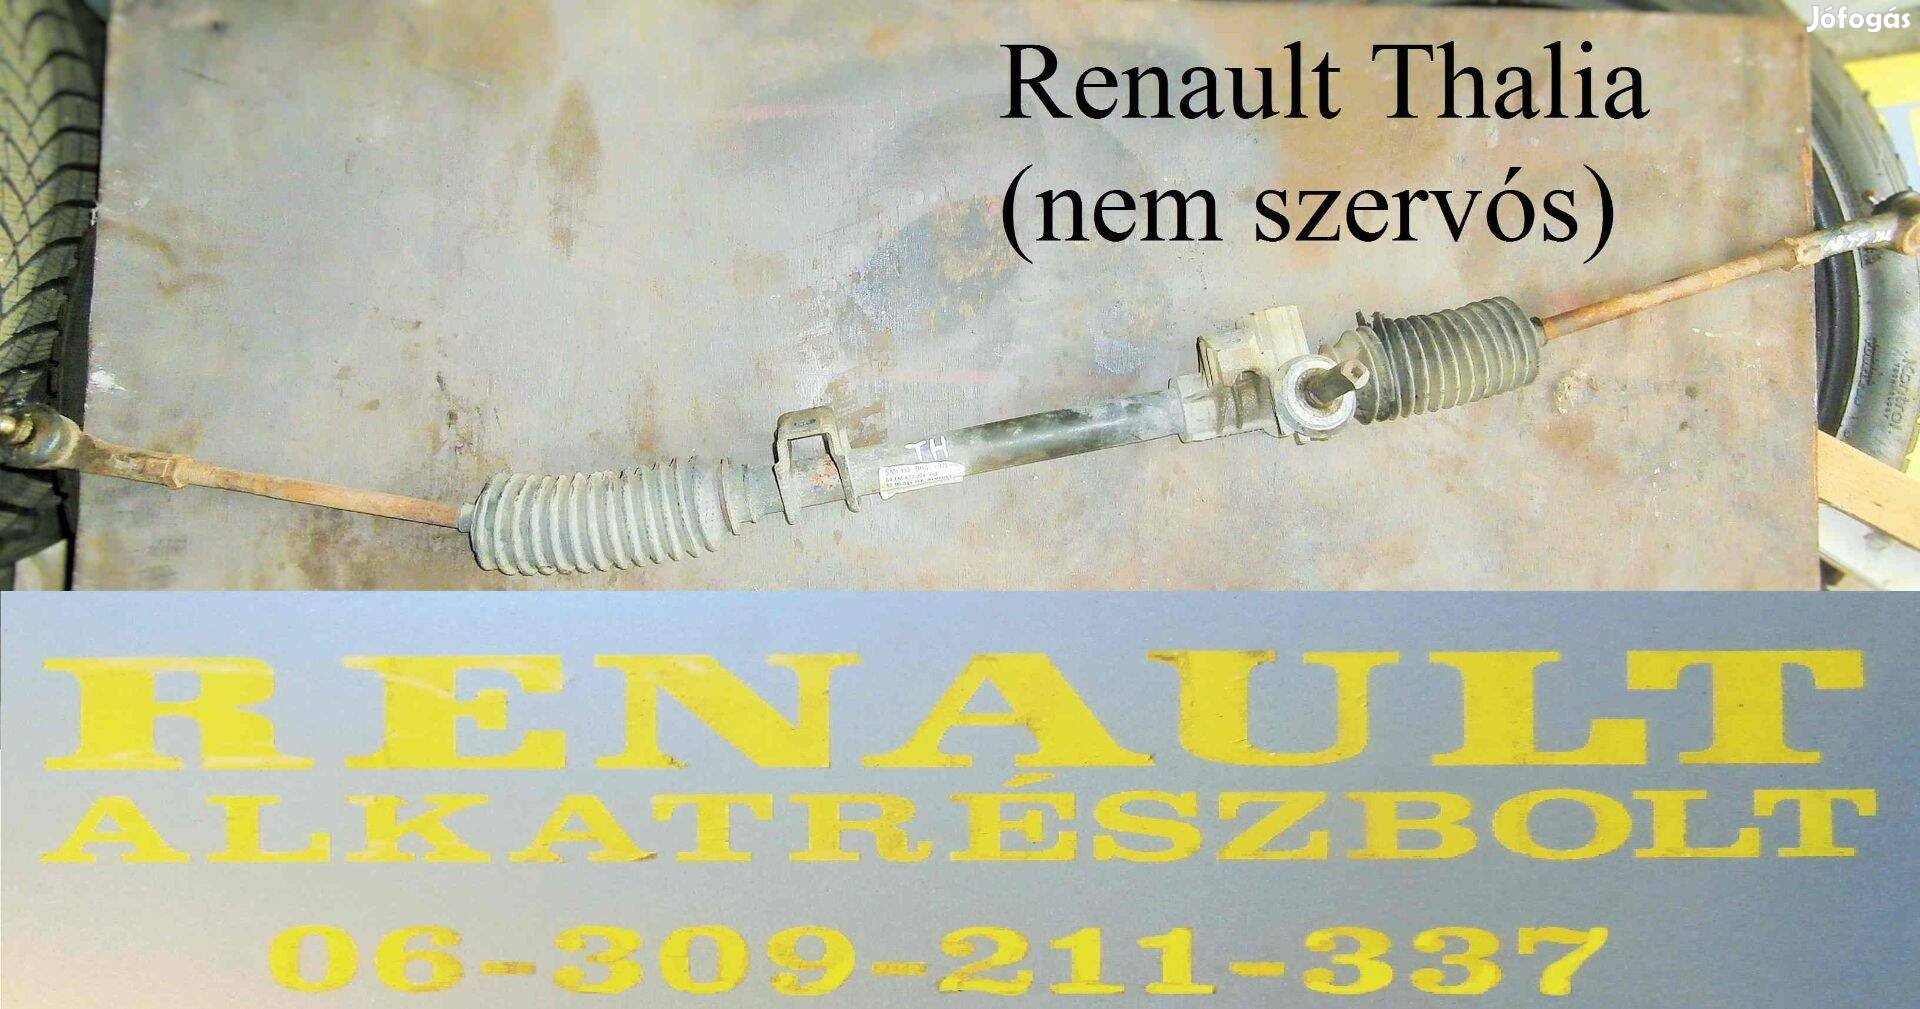 Renault Thalia kormánymű nem szervós